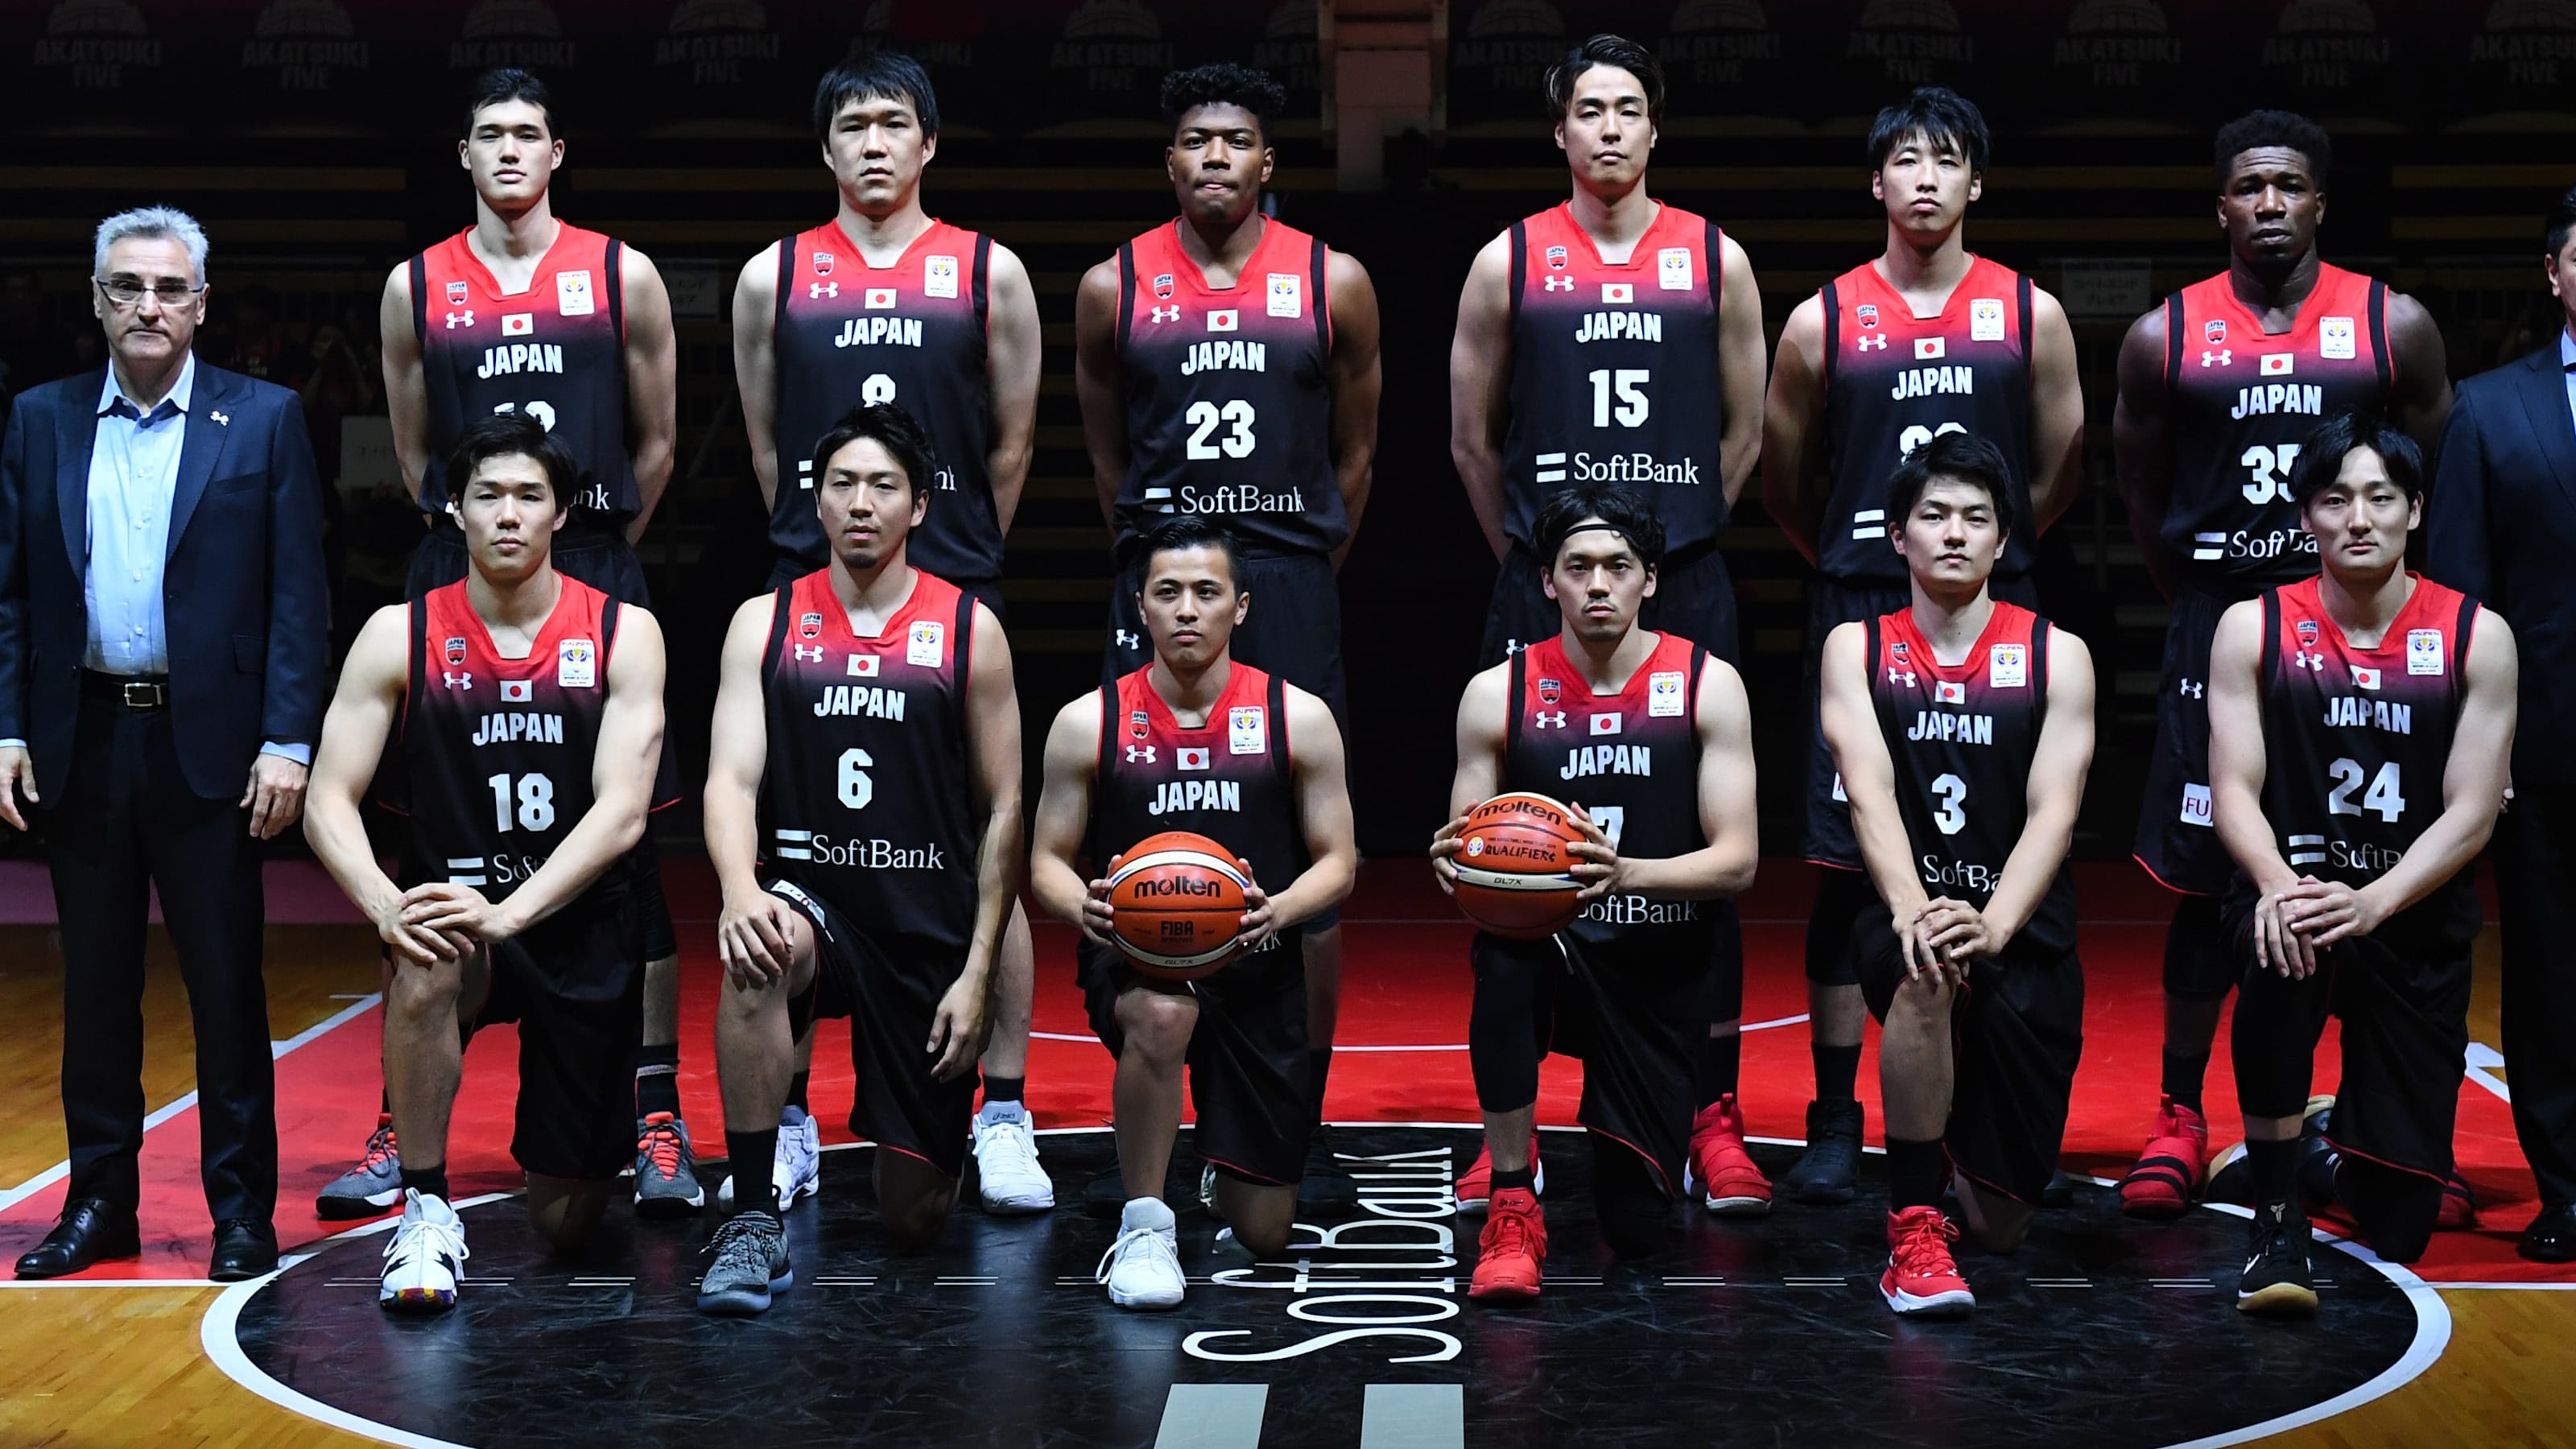 バスケットボール 東京五輪男子日本代表候補選手発表 八村塁 渡邊雄太ら32名